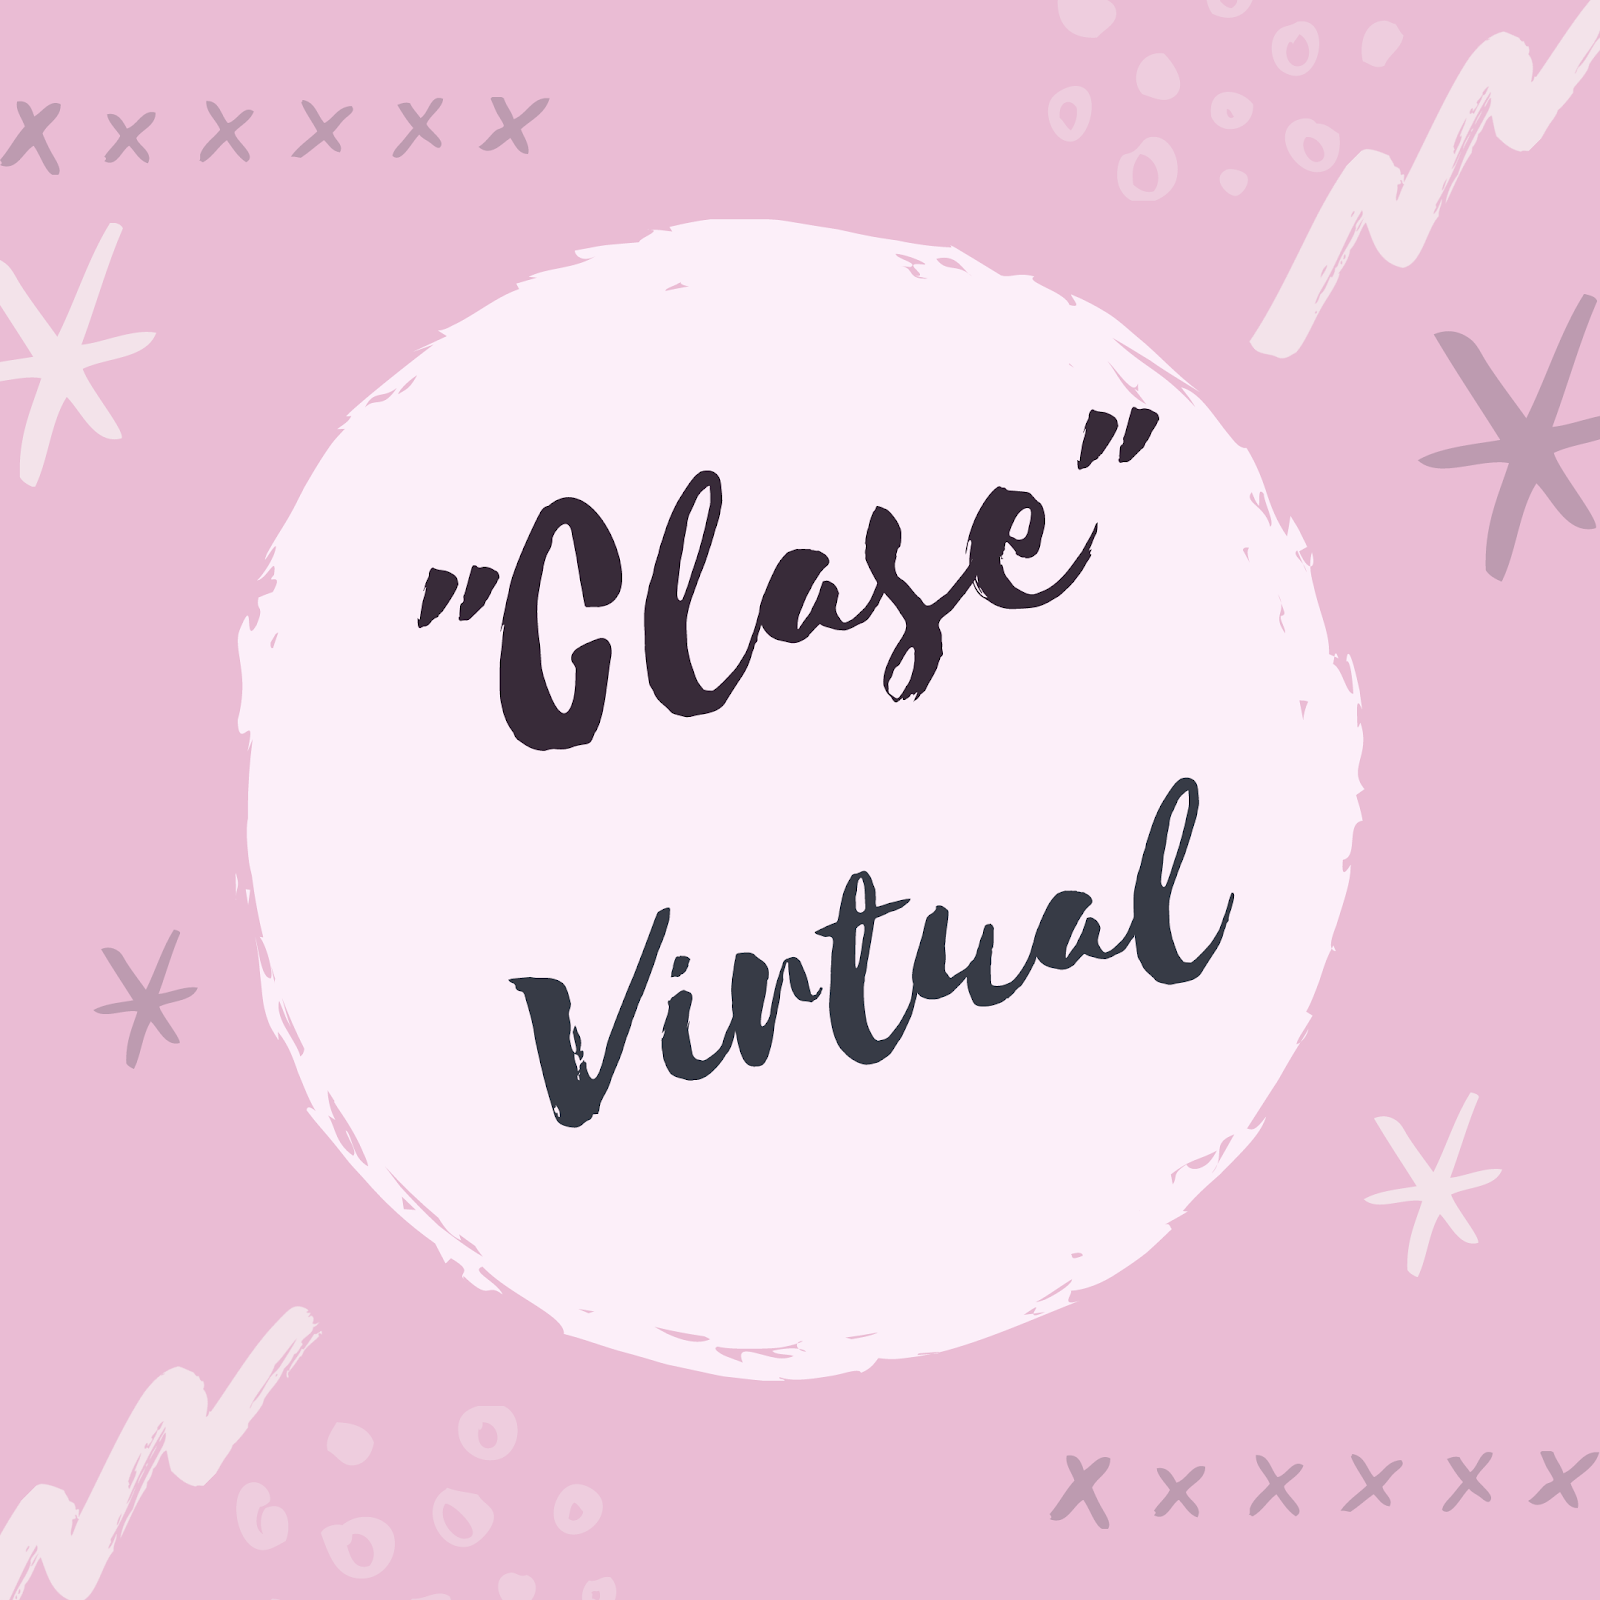 "clase" virtual